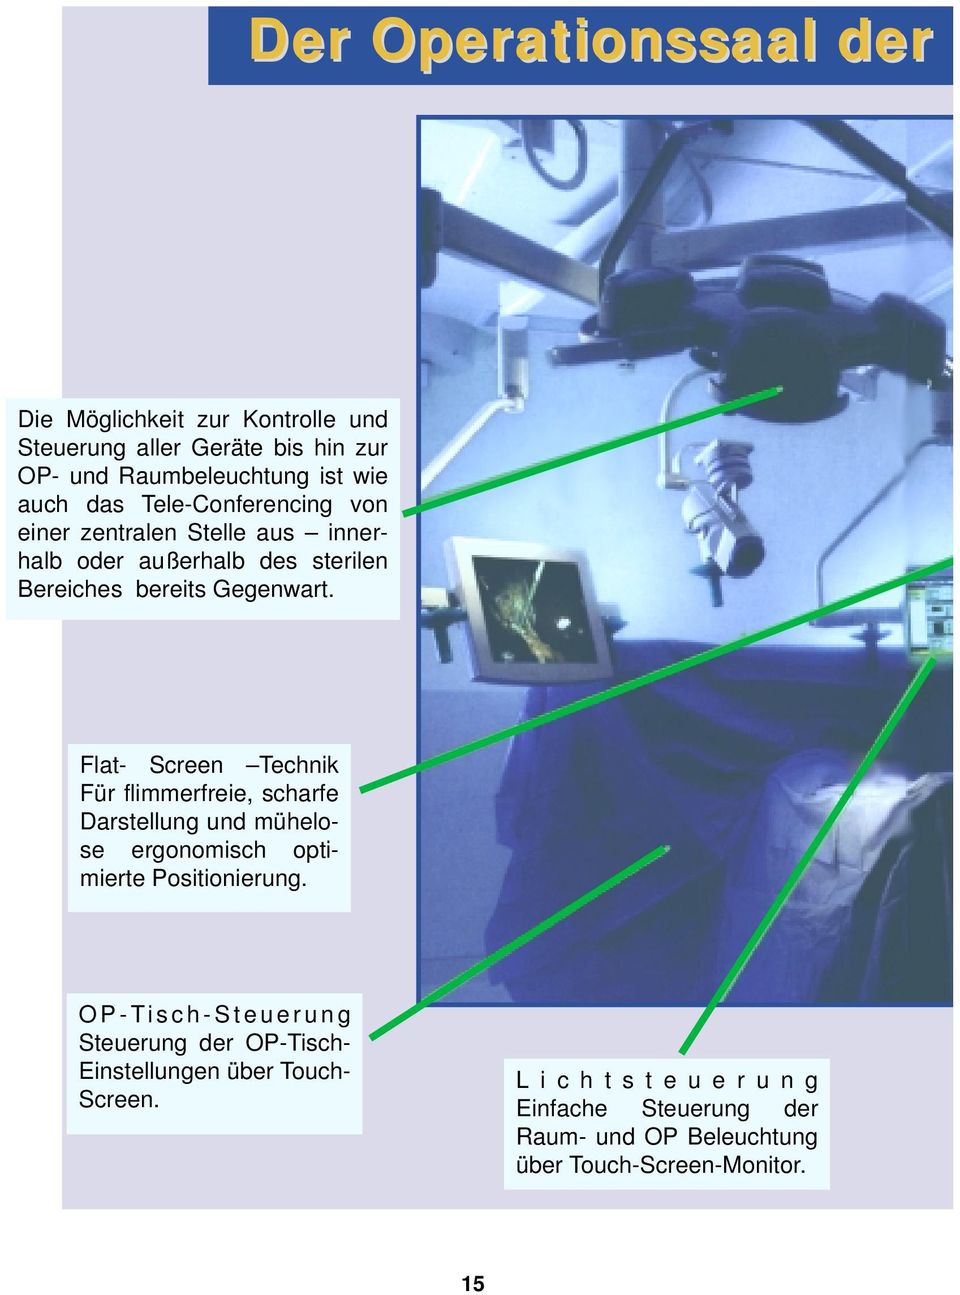 Flat- Screen Technik Für flimmerfreie, scharfe Darstellung und mühelose ergonomisch optimierte Positionierung.